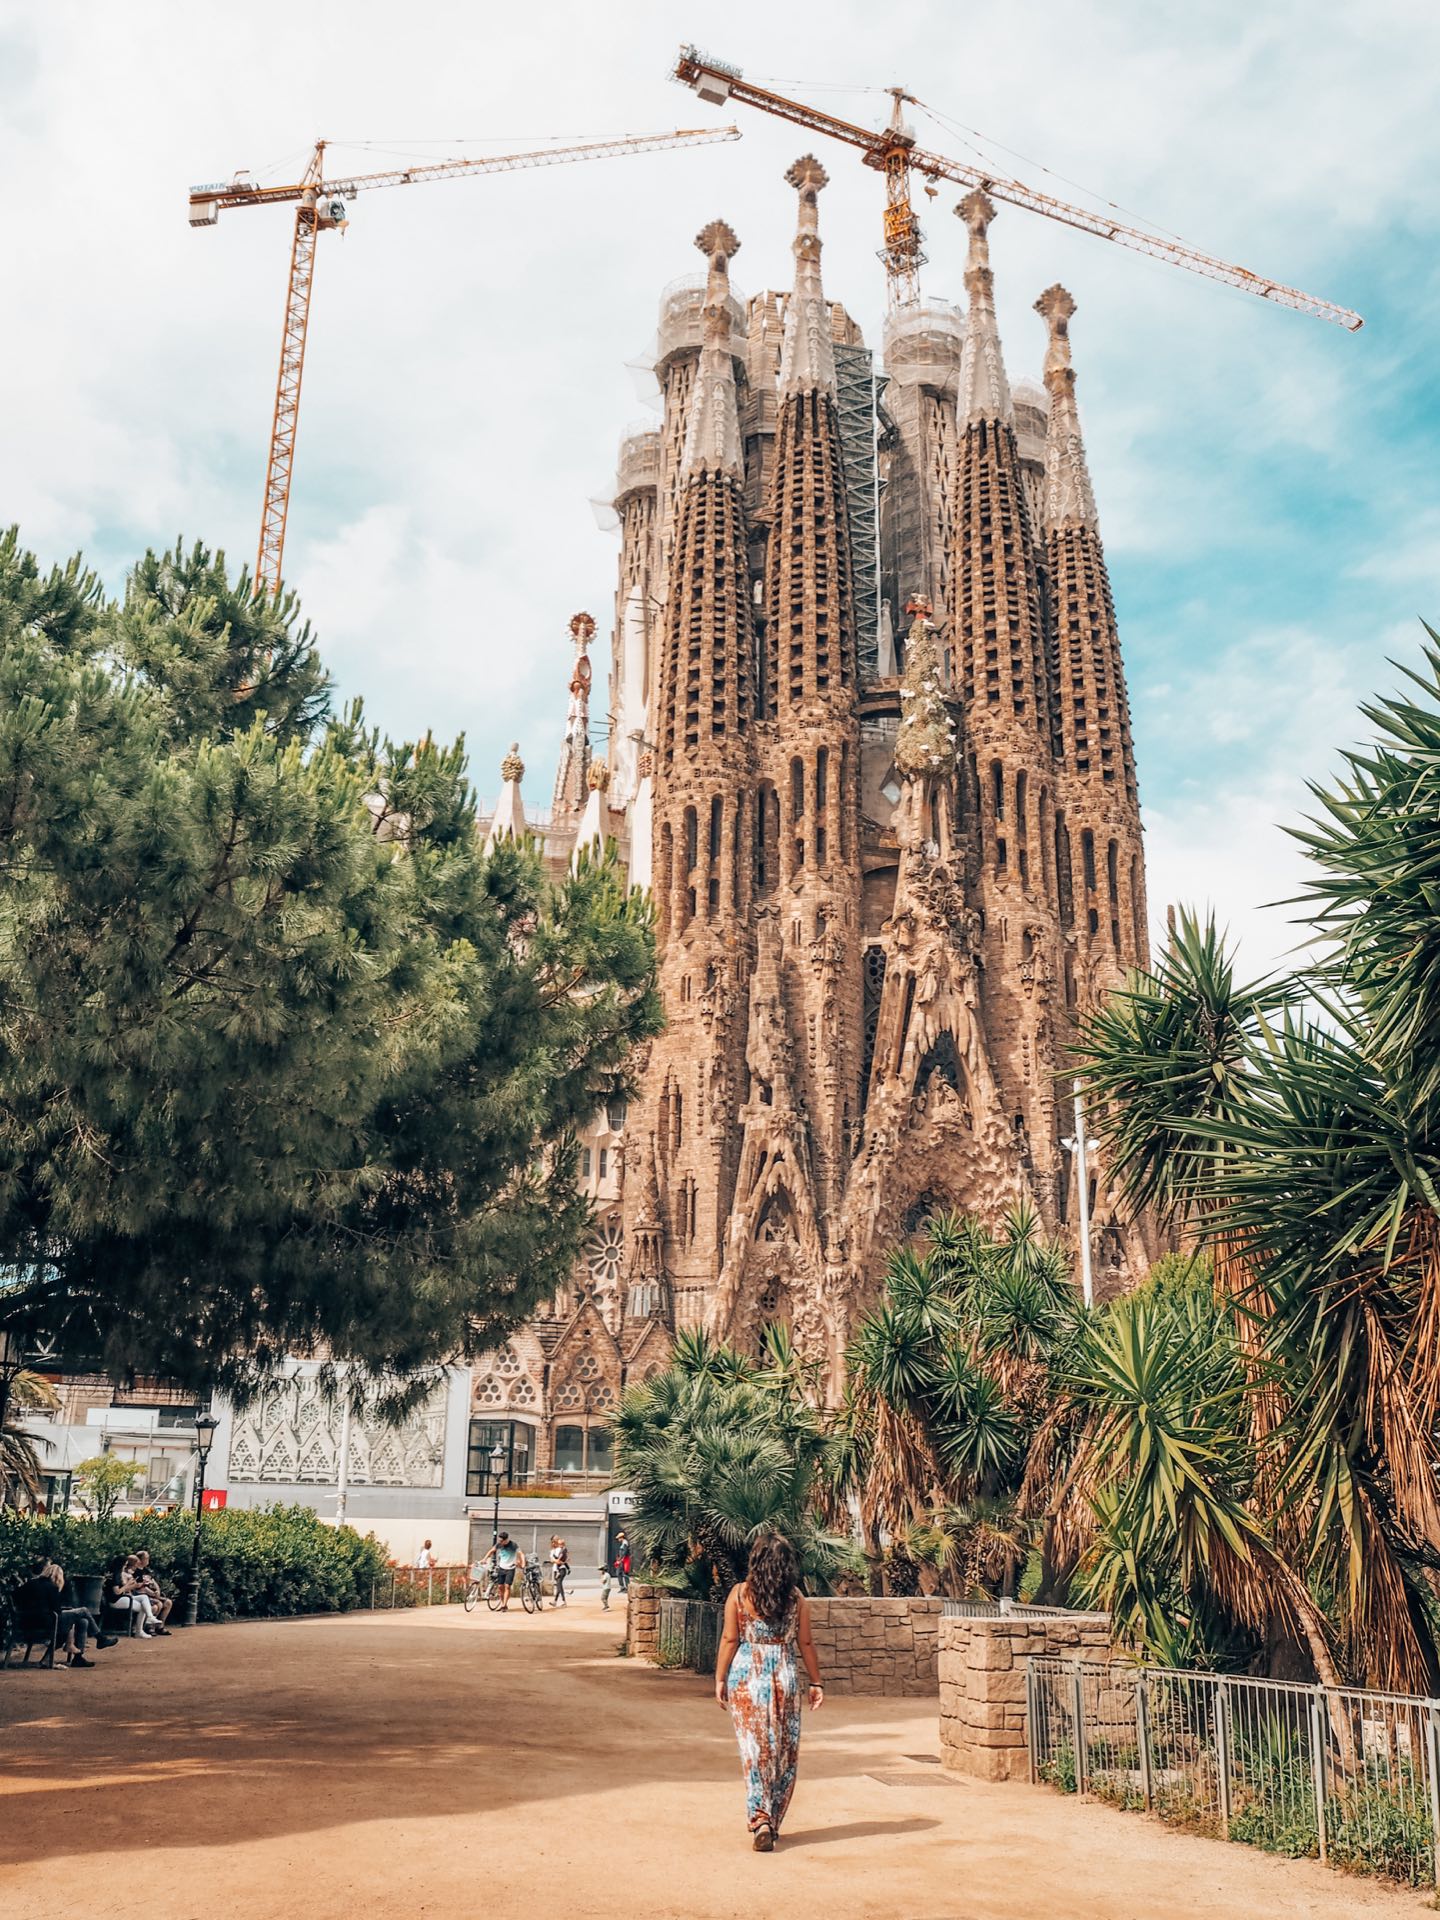 Sagrada Familia, visita al sitio más emblemático de Barcelona